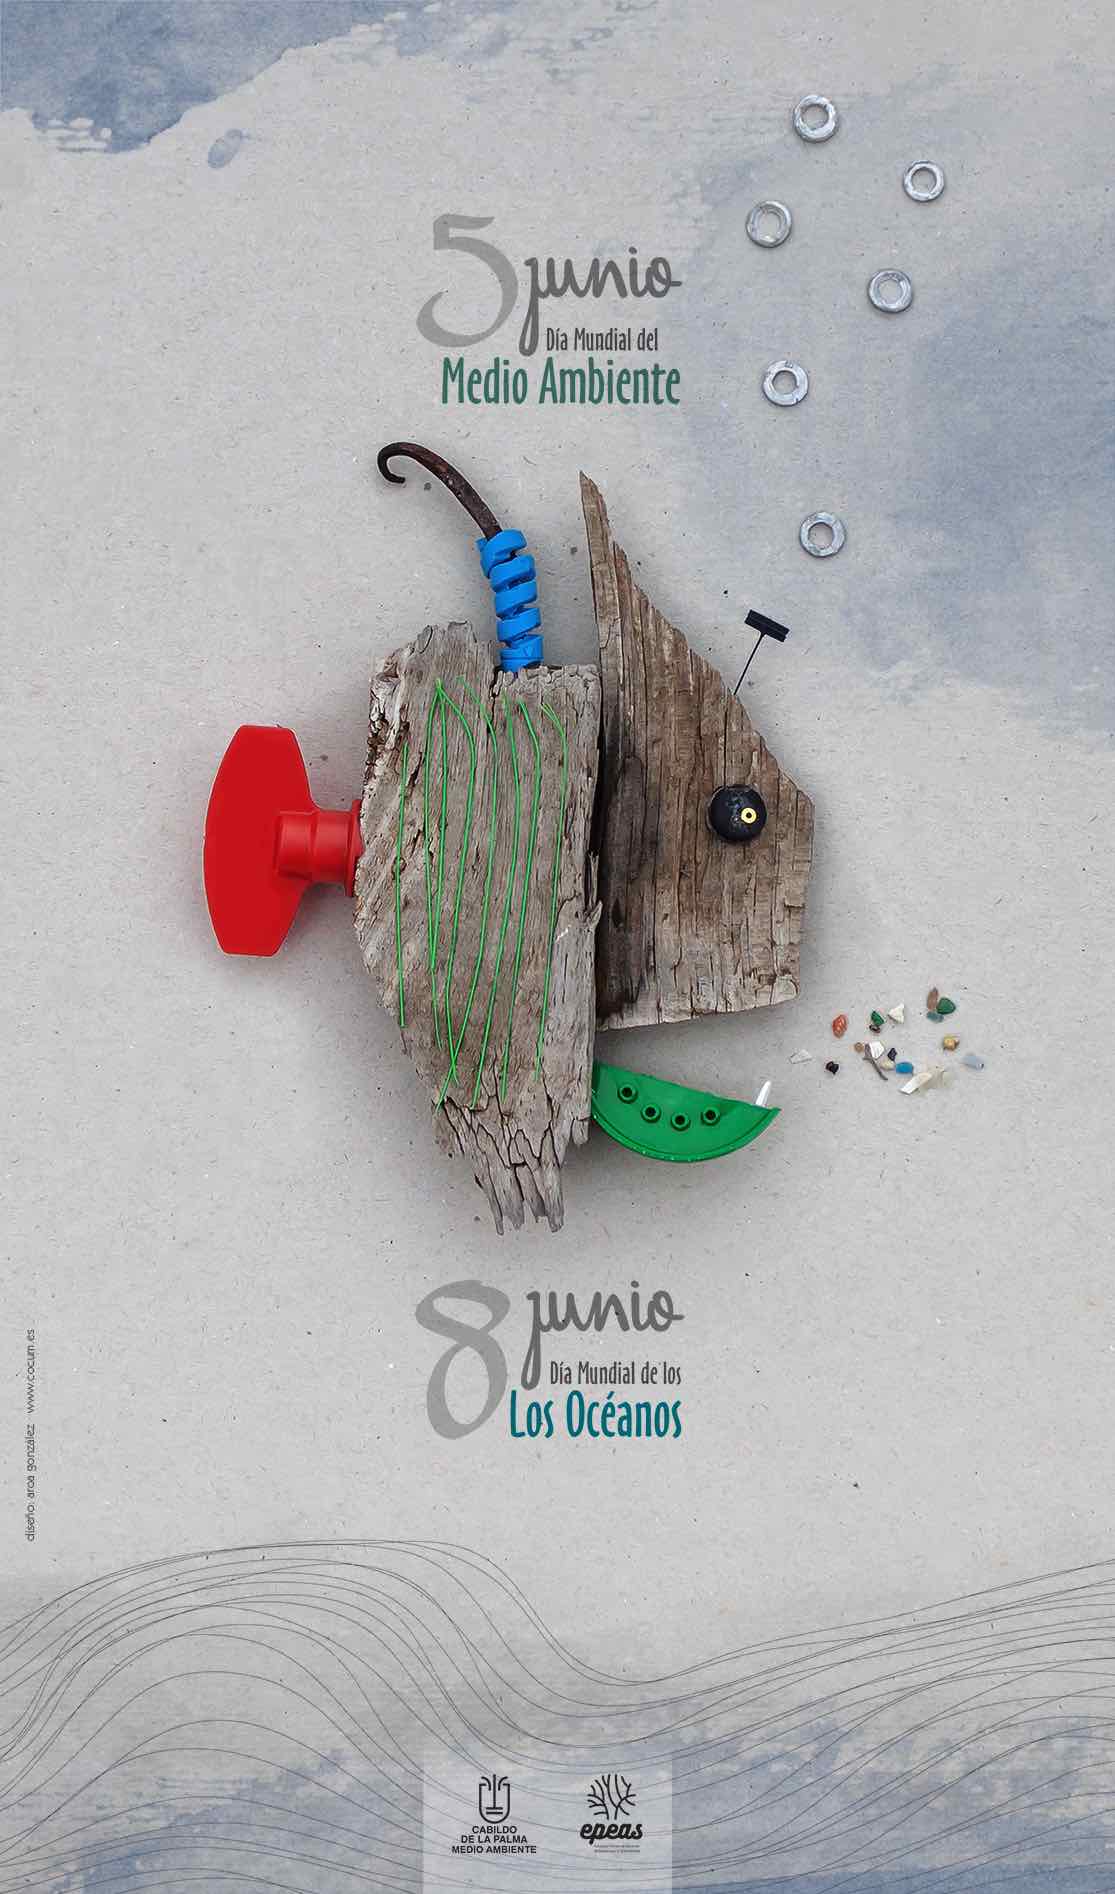 La Palma celebra los días mundiales del Medio Ambiente y del Océano con un programa de talleres educativos